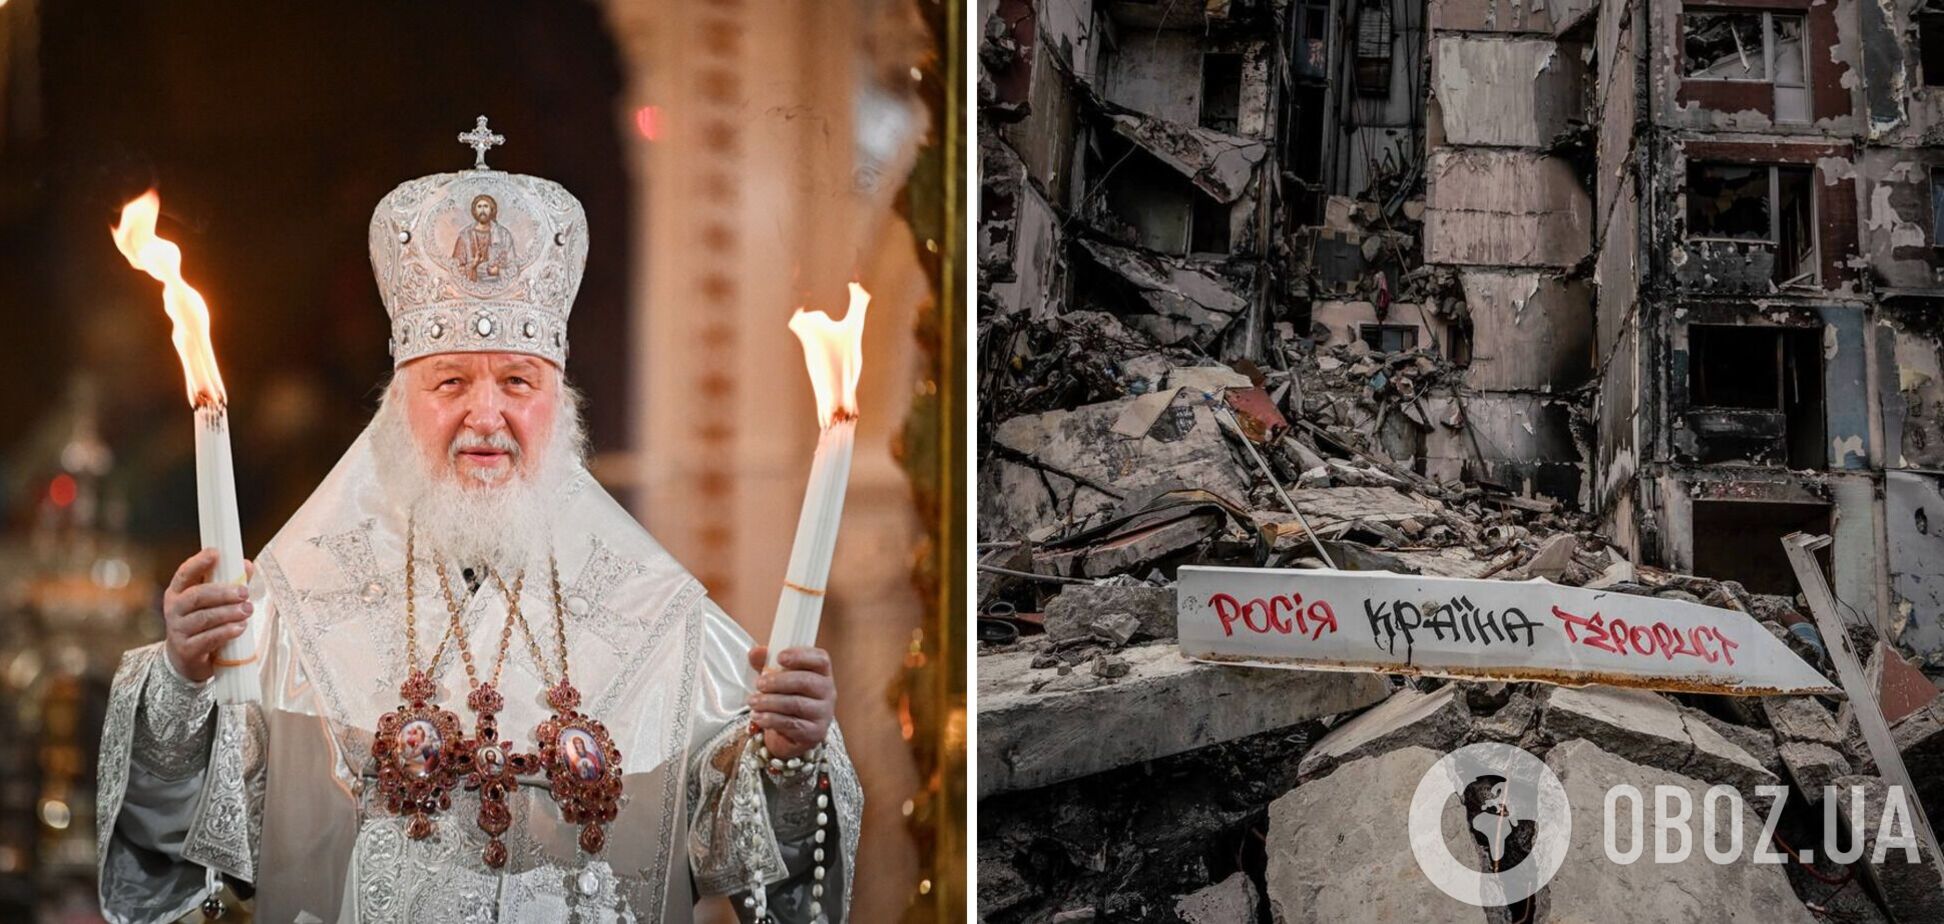 Патриарх Кирилл, поддержавший войну, заявил о необходимости 'духовной мобилизации' для примирения Украины и РФ